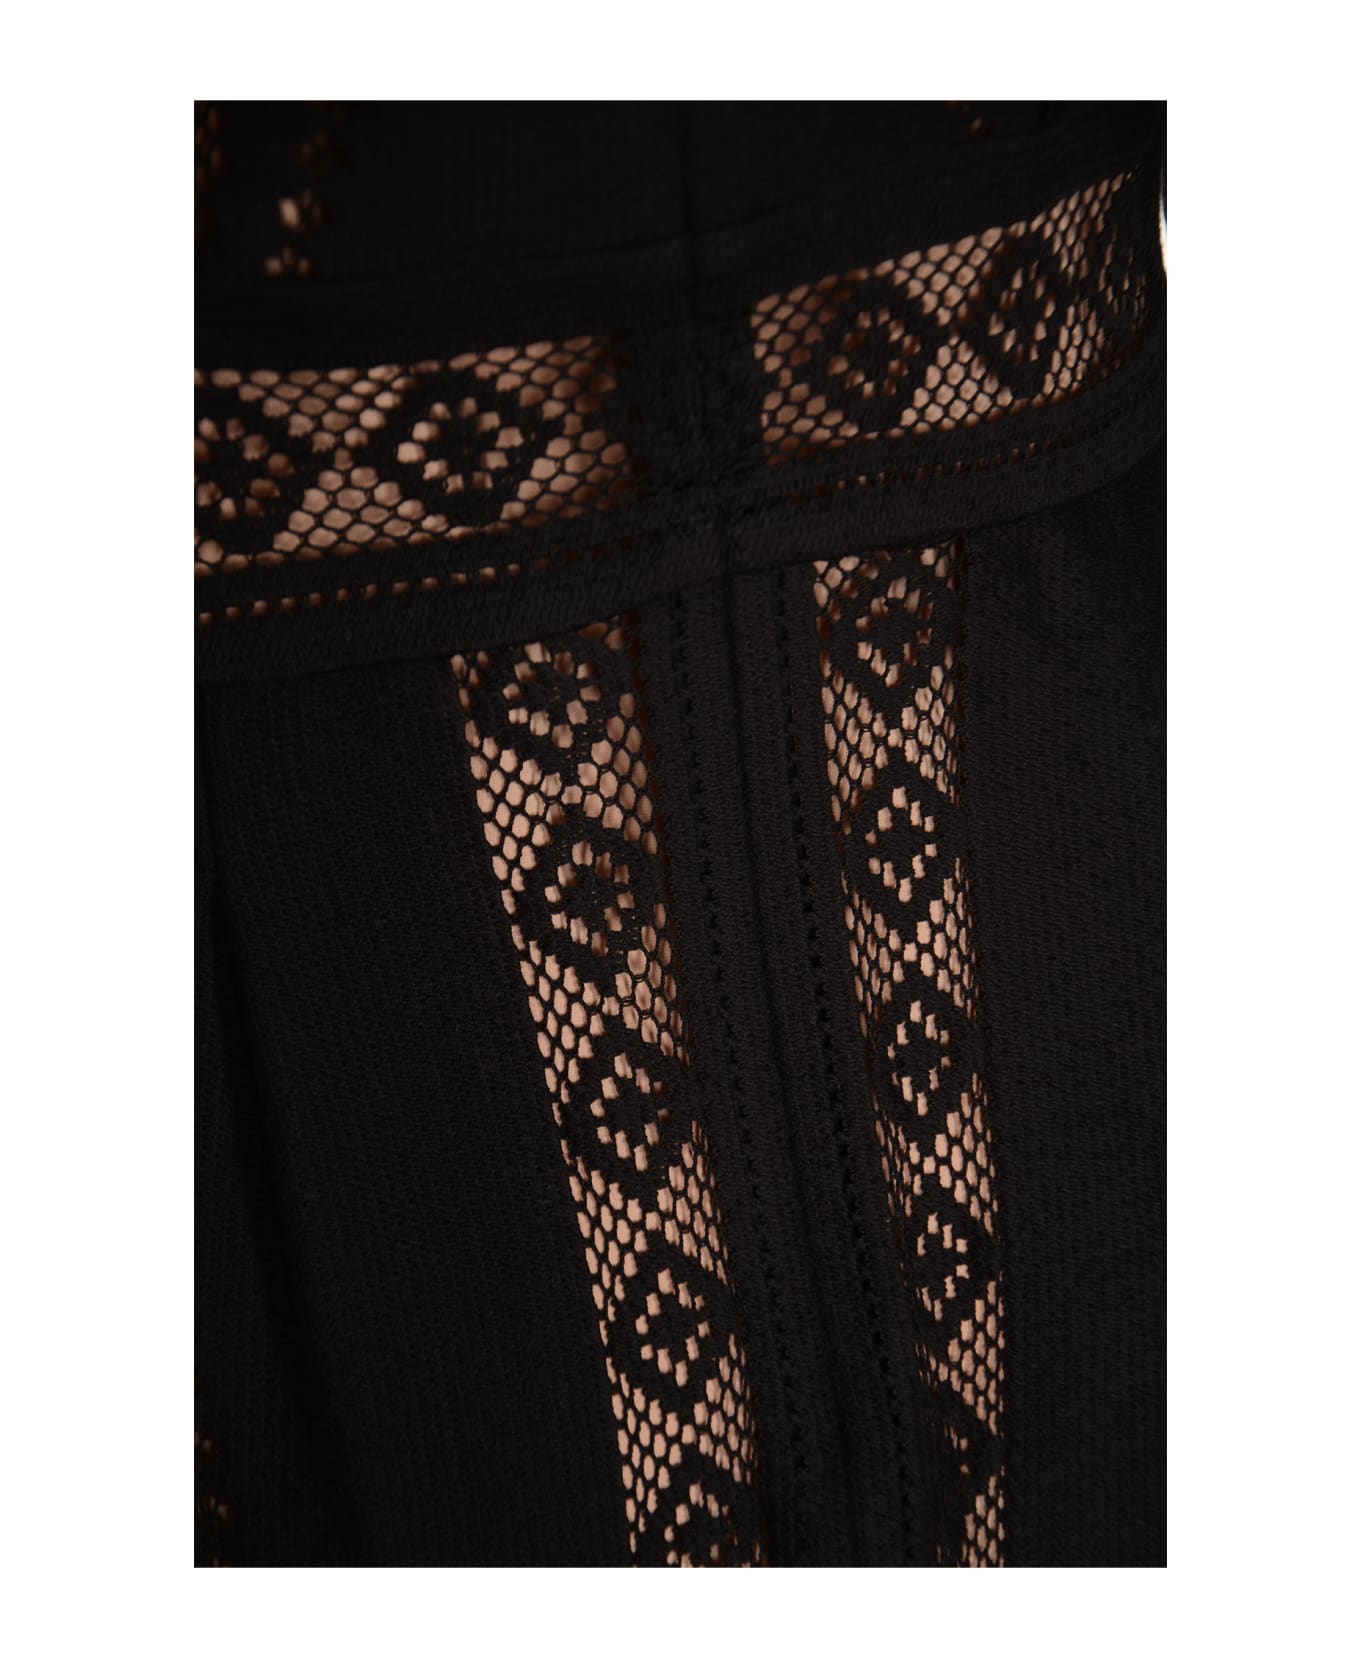 Alberta Ferretti Pattern Perforated Flare Dress - Black ワンピース＆ドレス